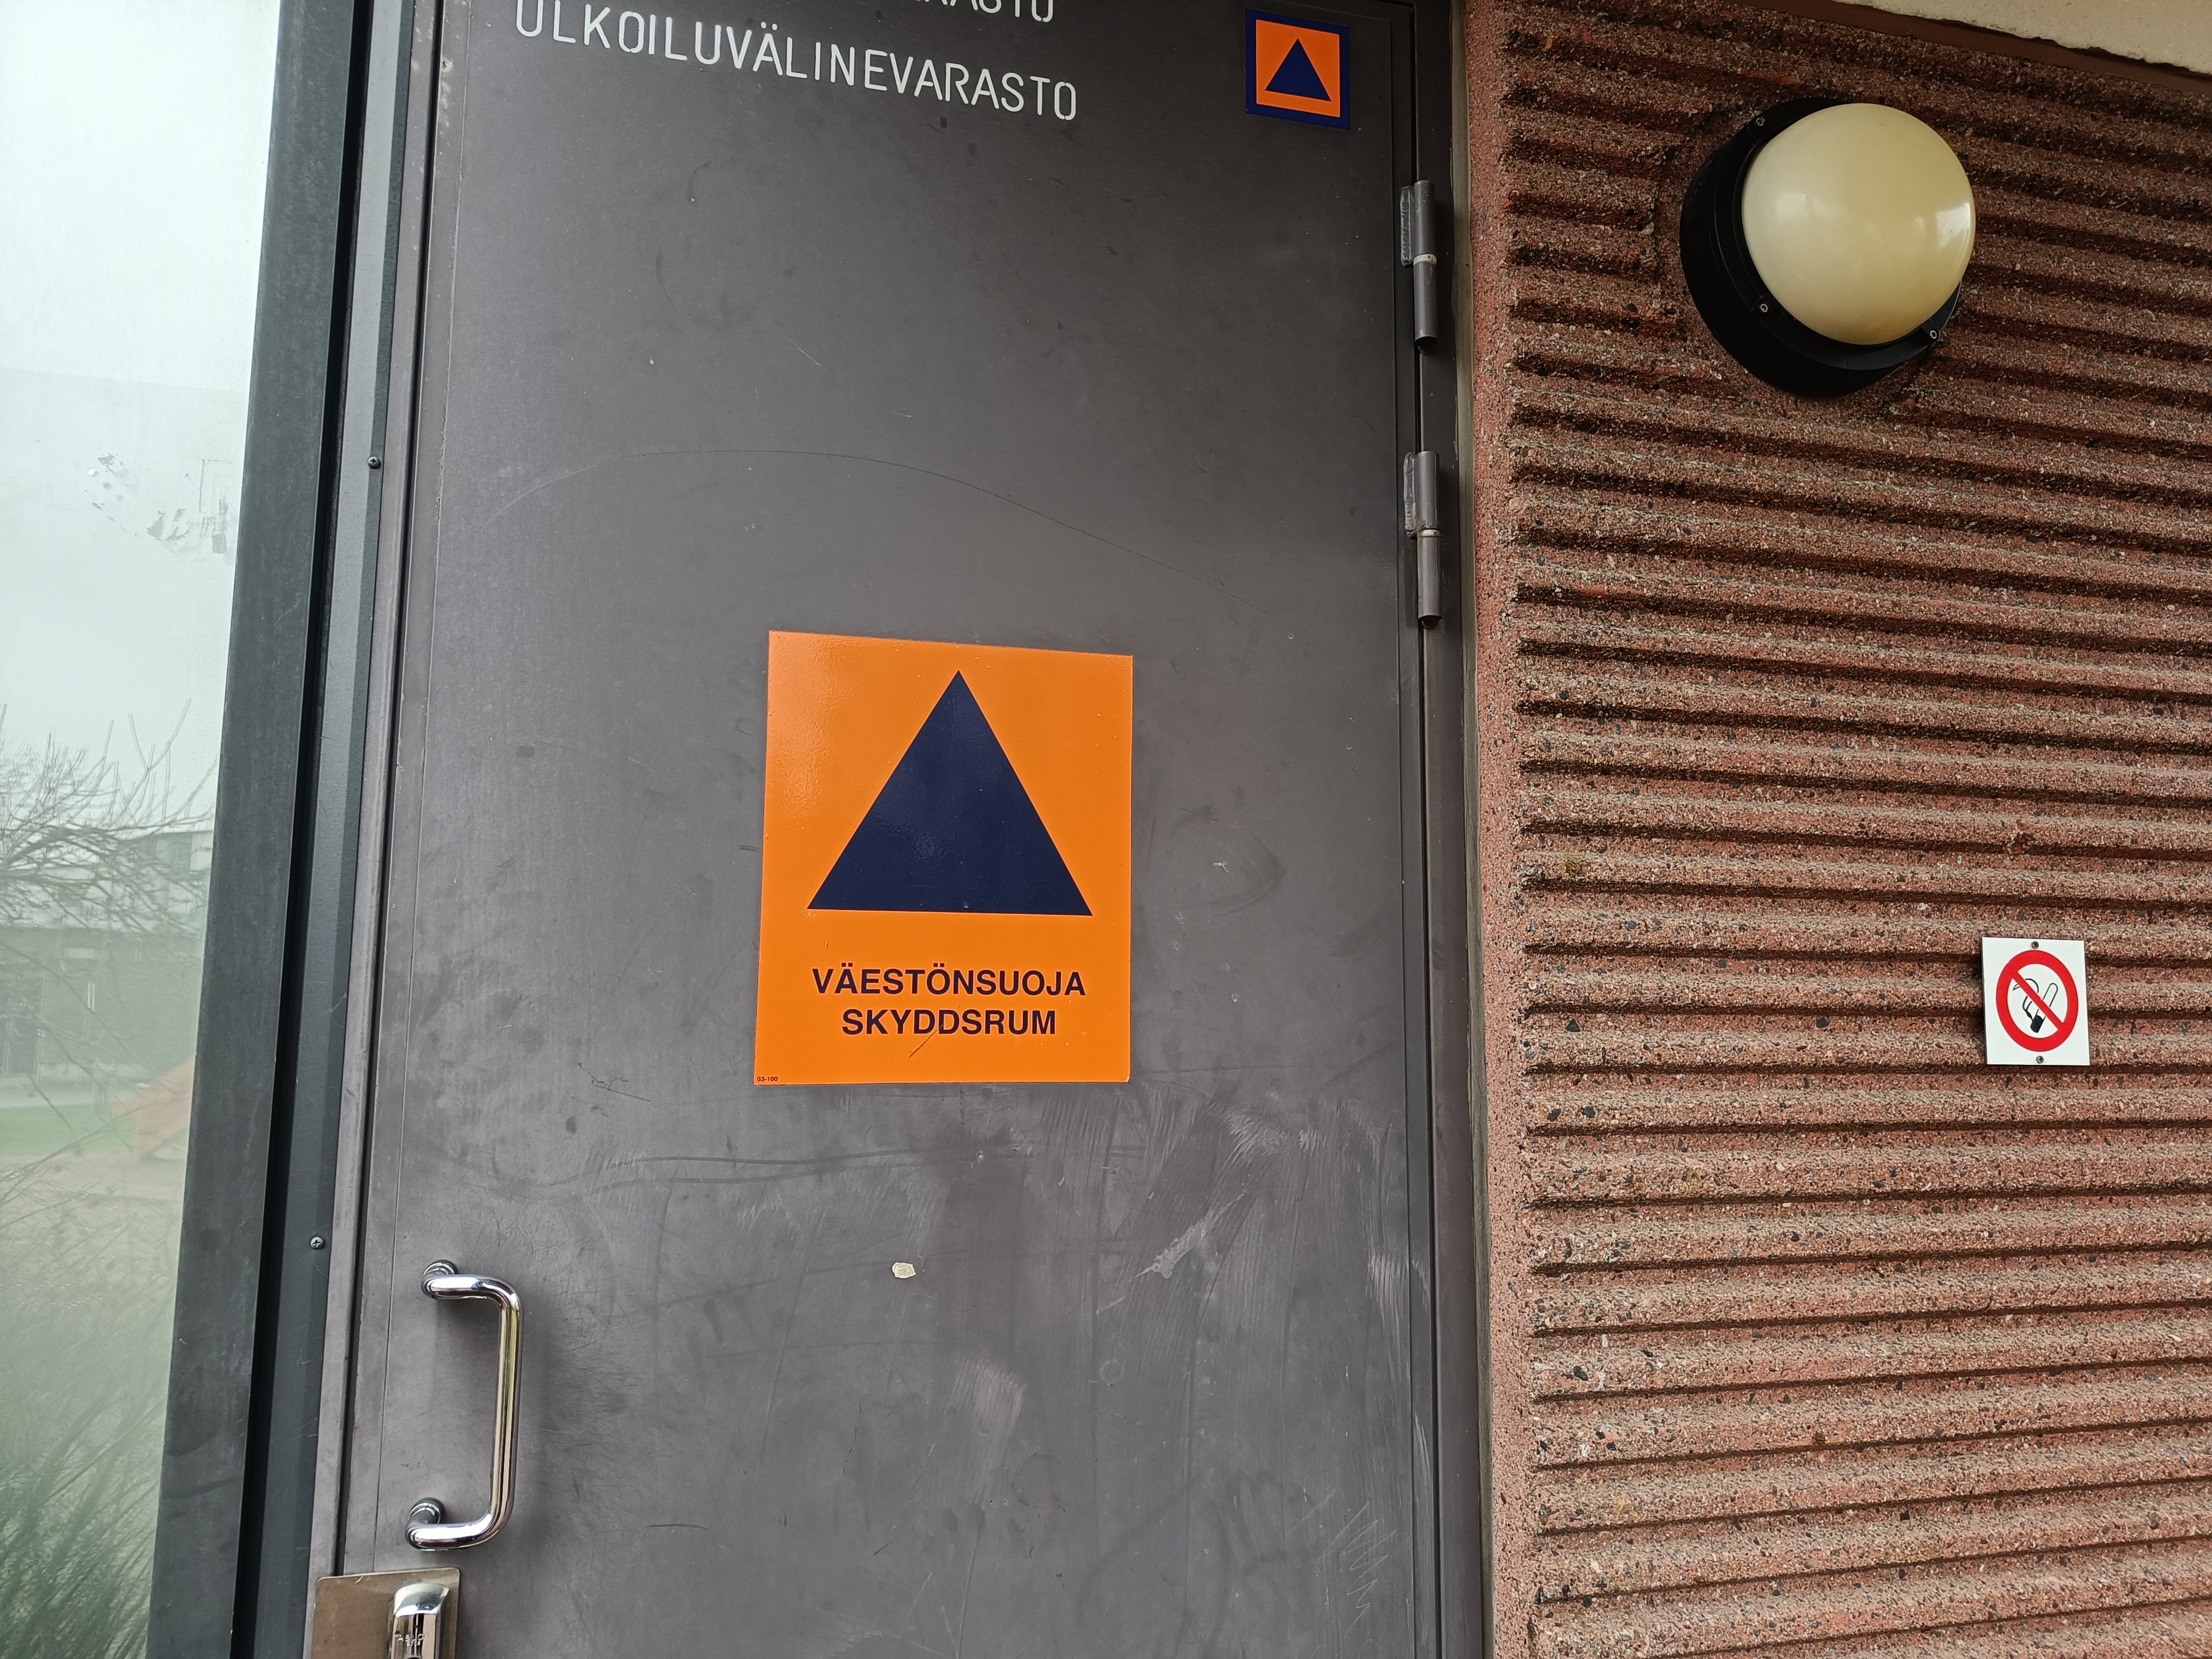 ovi kerrostalon ulkoiluvälinevarastoon, joka toimii myös väestönsuojana. Ovessa on väestönsuojan kansainvälinen logo, jossa on tummansininen kolmio oranssilla pohjalla ja alla teksti väestönsuoja skyddsrum.